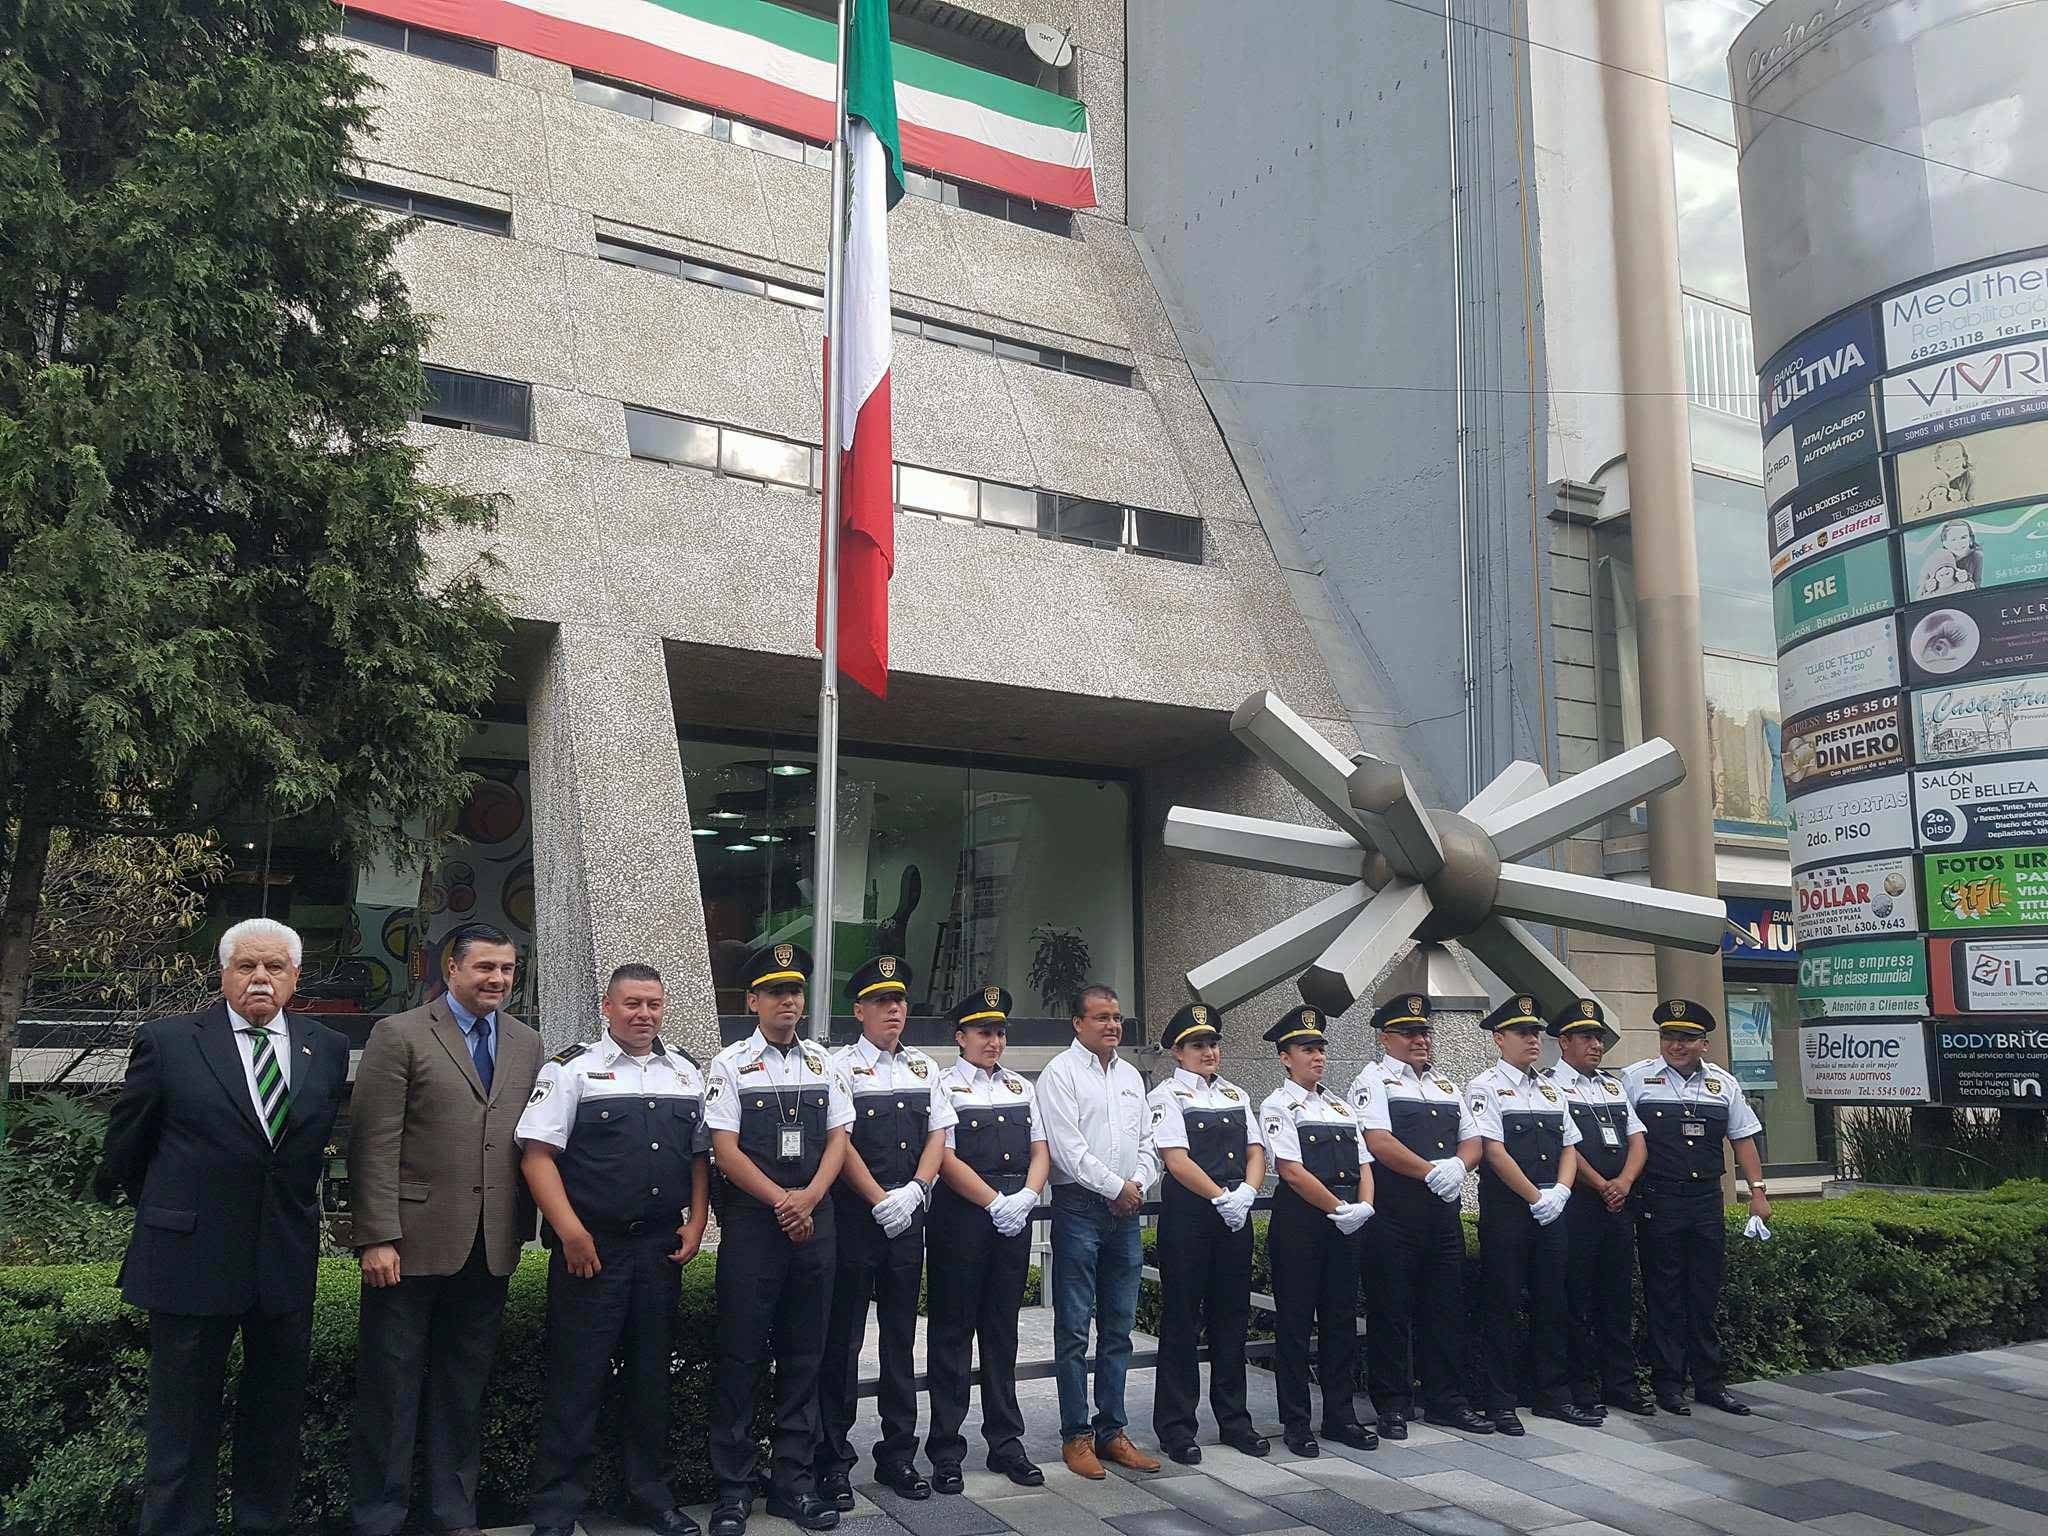 En el marco del 207 Aniversario de la Independencia de México, en el exterior del edificio de Pronósticos el cuerpo de seguridad de la Institución, el Comandante Arón Pacheco, Licenciado Carlos Marroquín